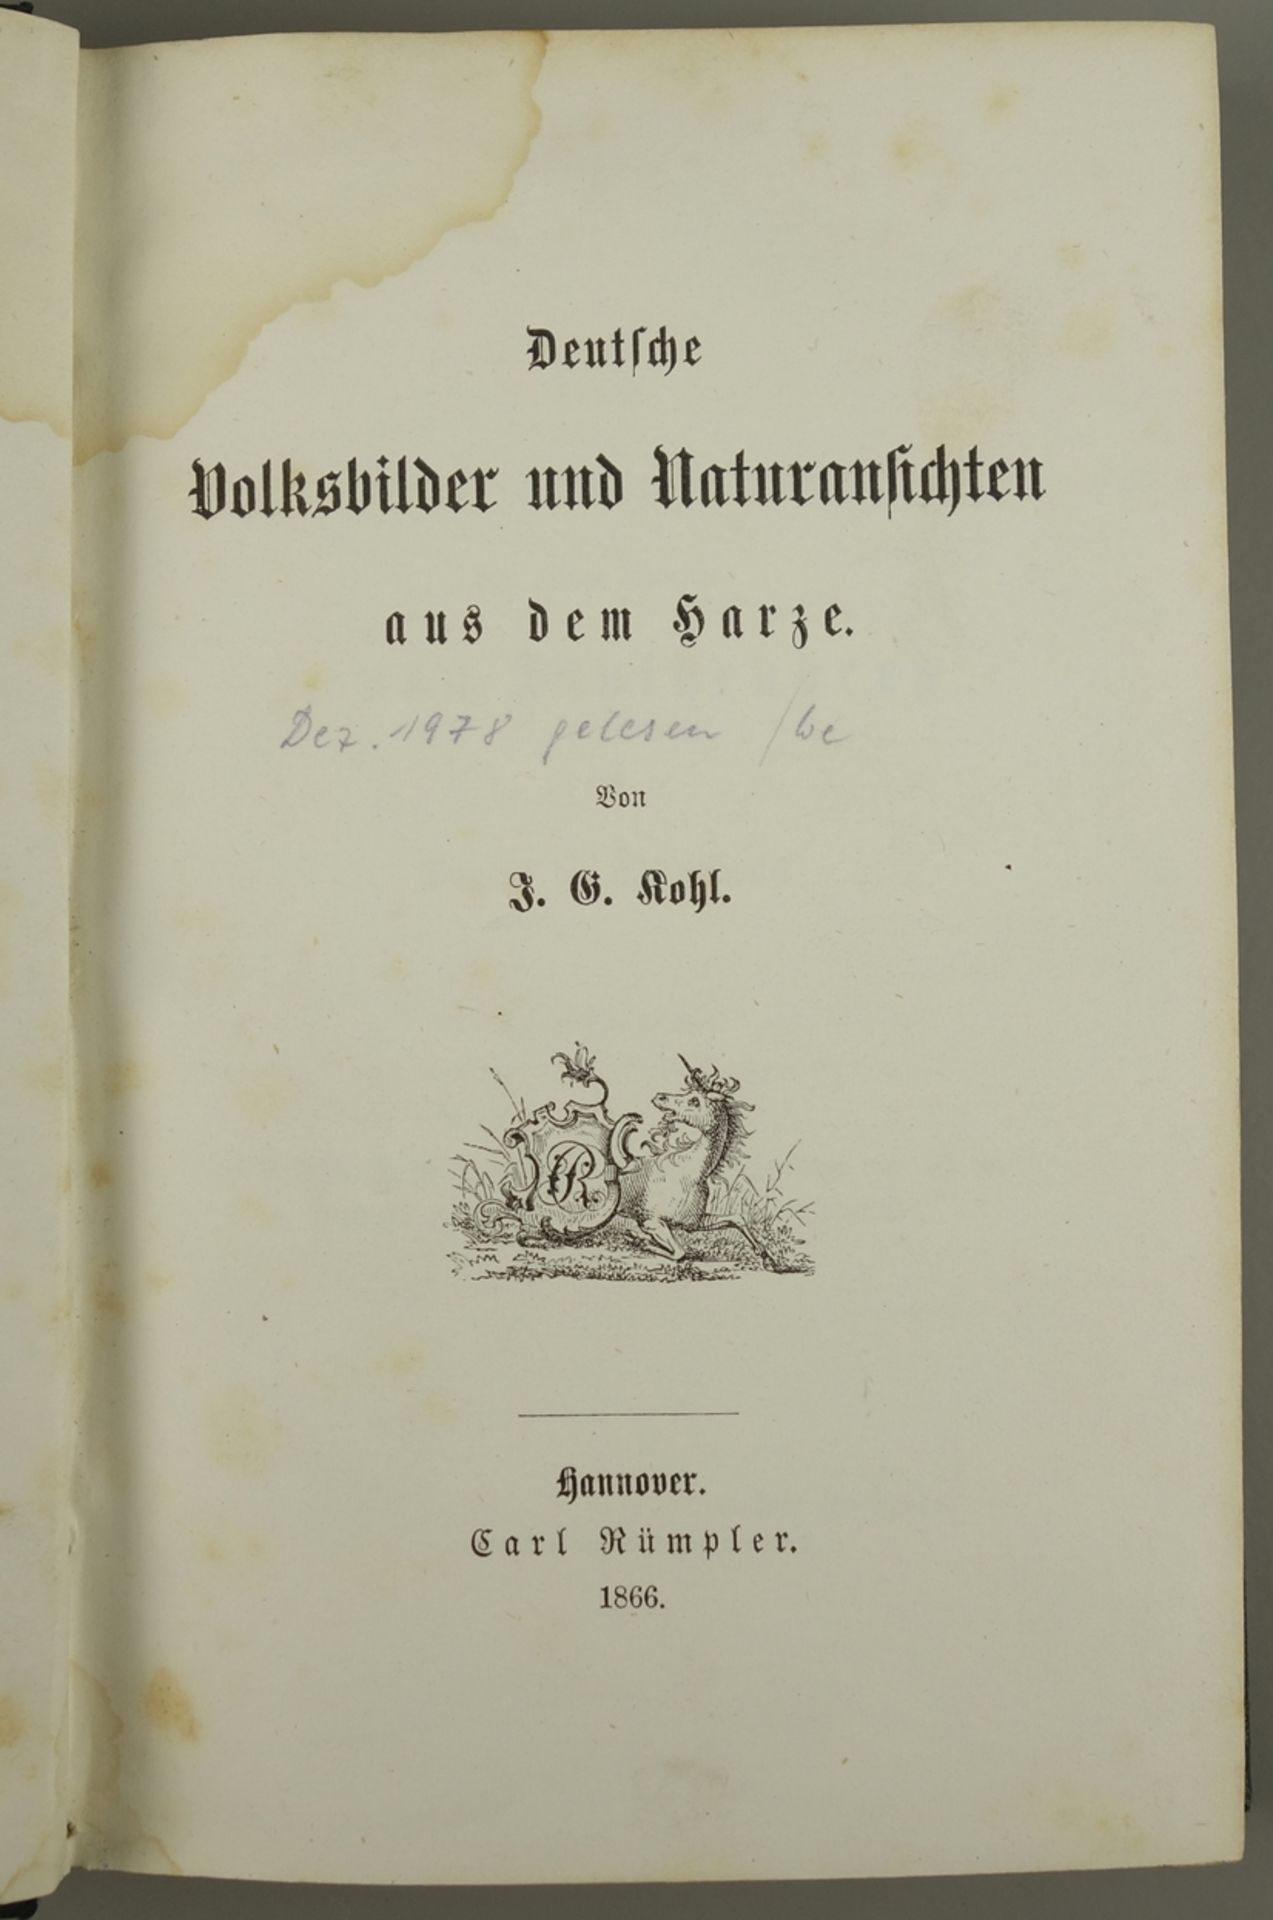 Deutsche Volksbilder und Naturansichten aus dem Harze, 1866